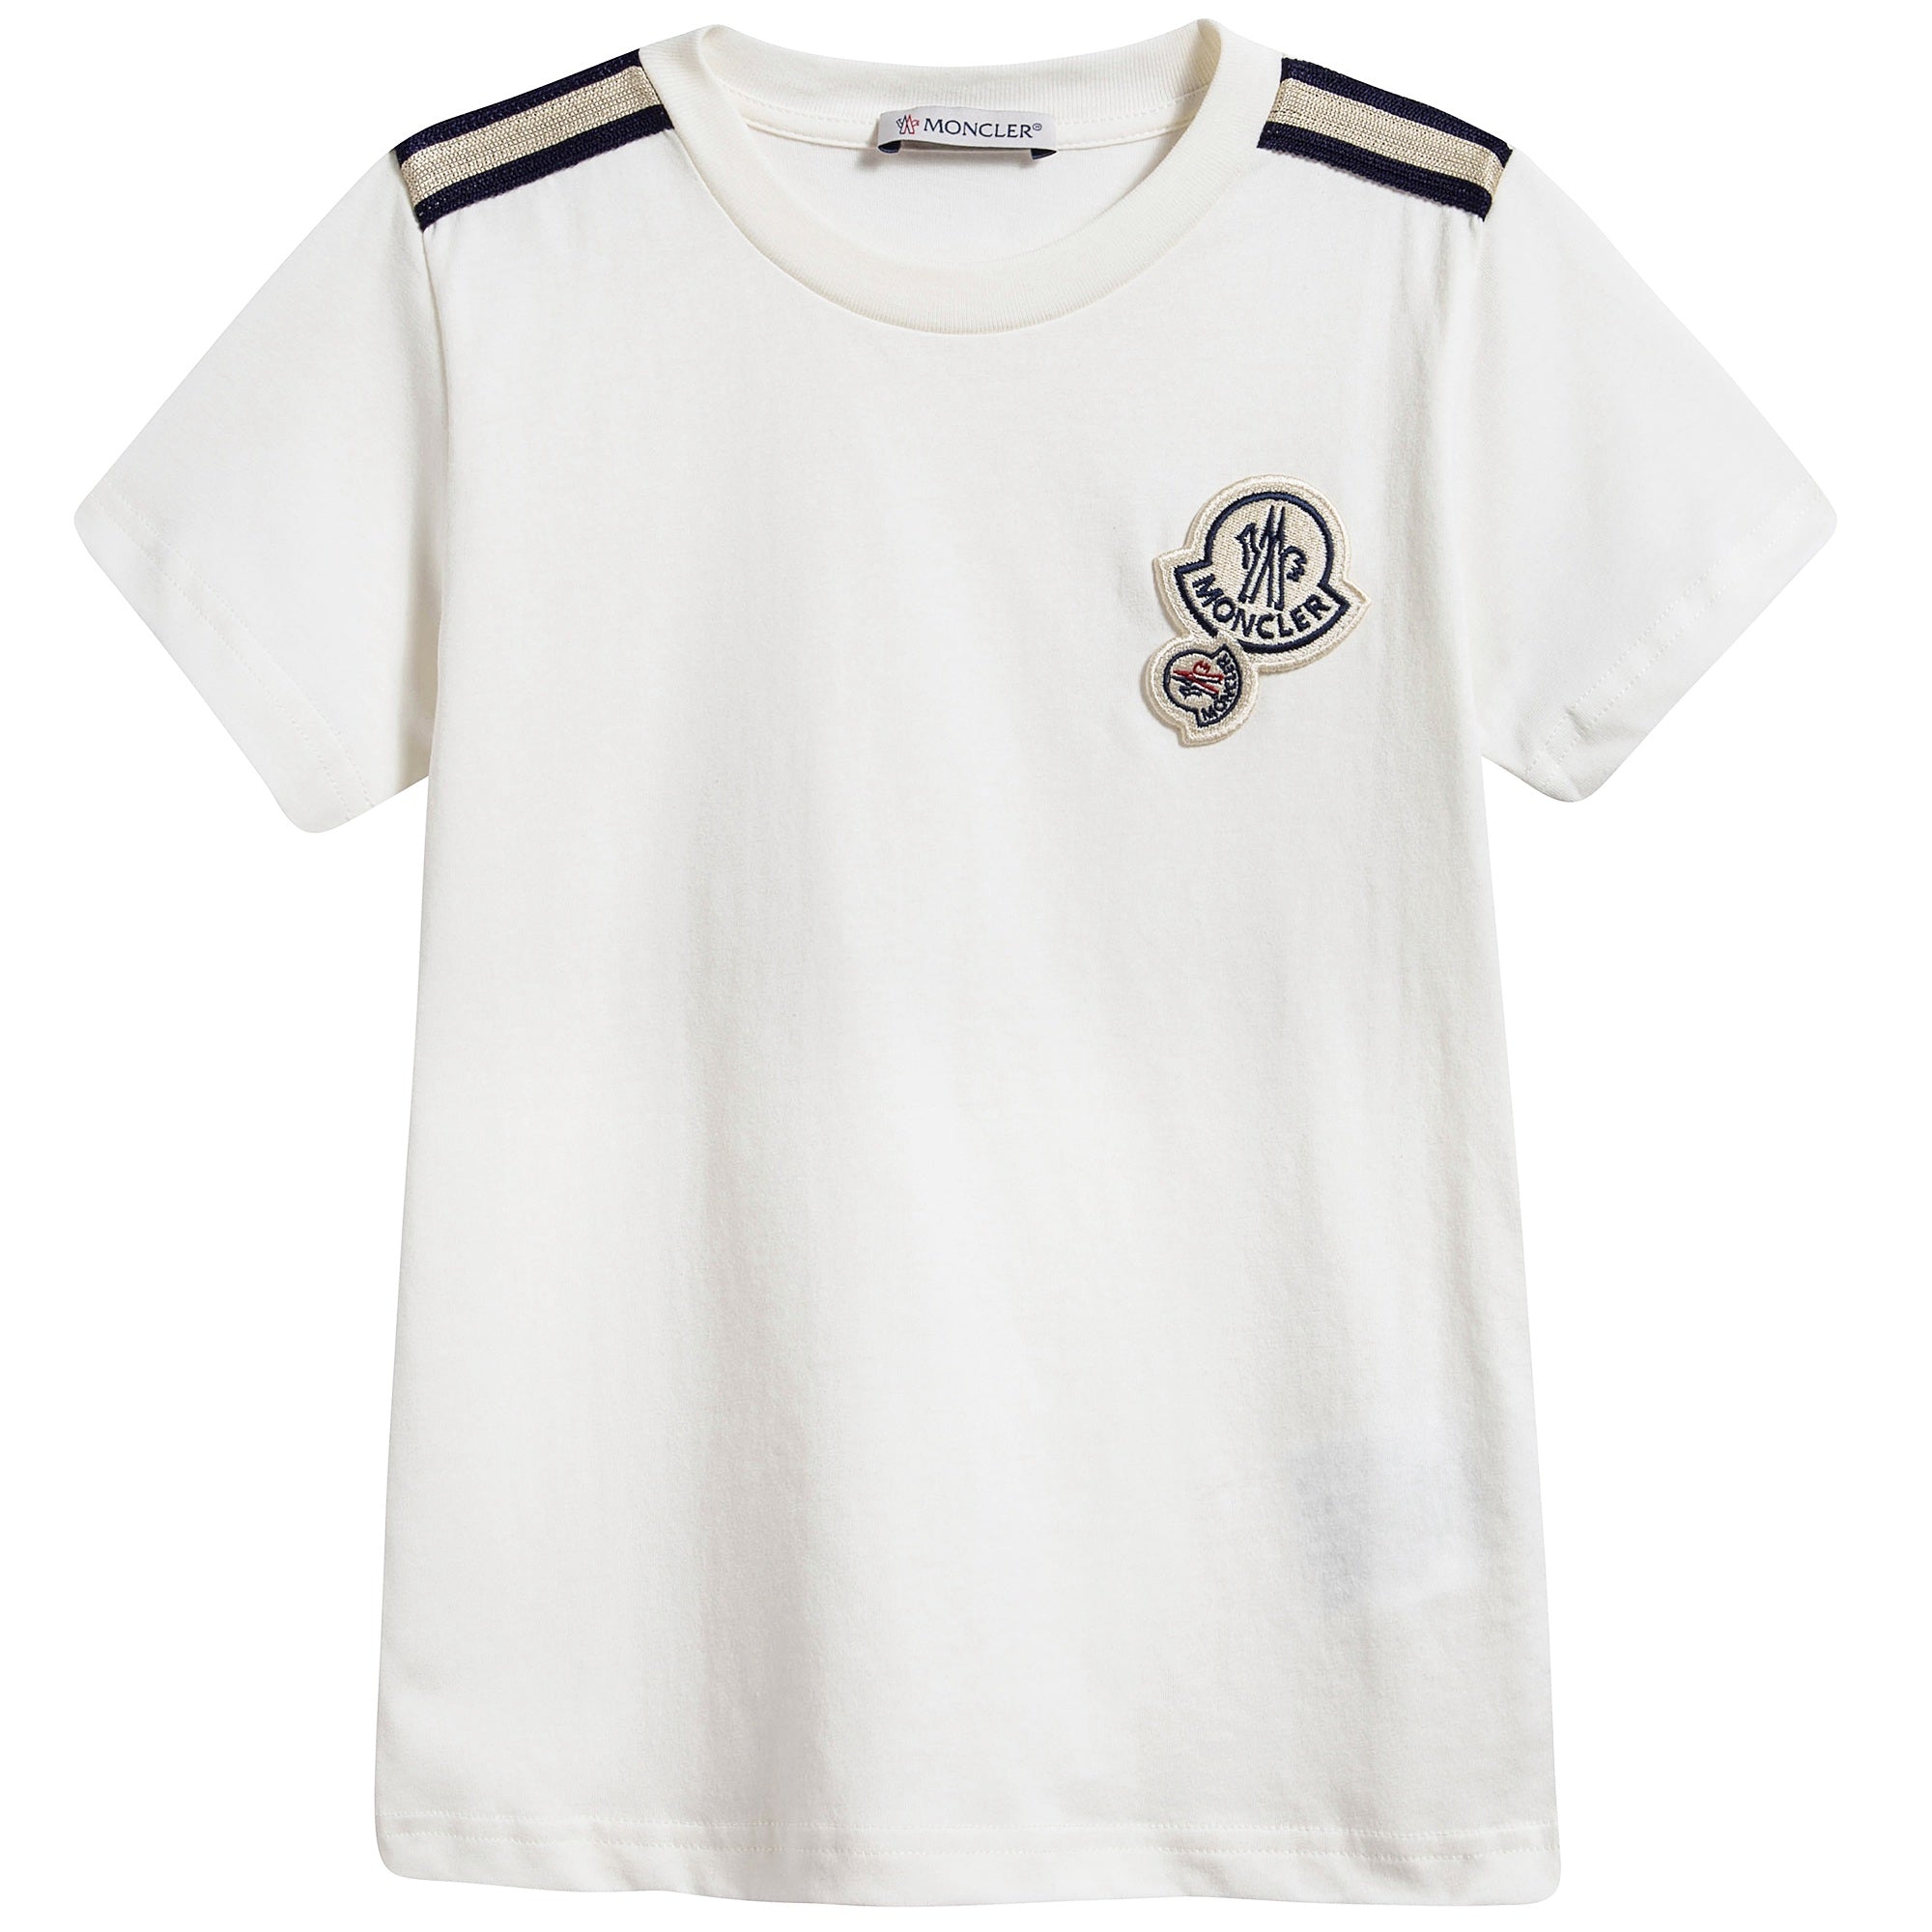 Boys White Logo "Maglia" T-Shirt